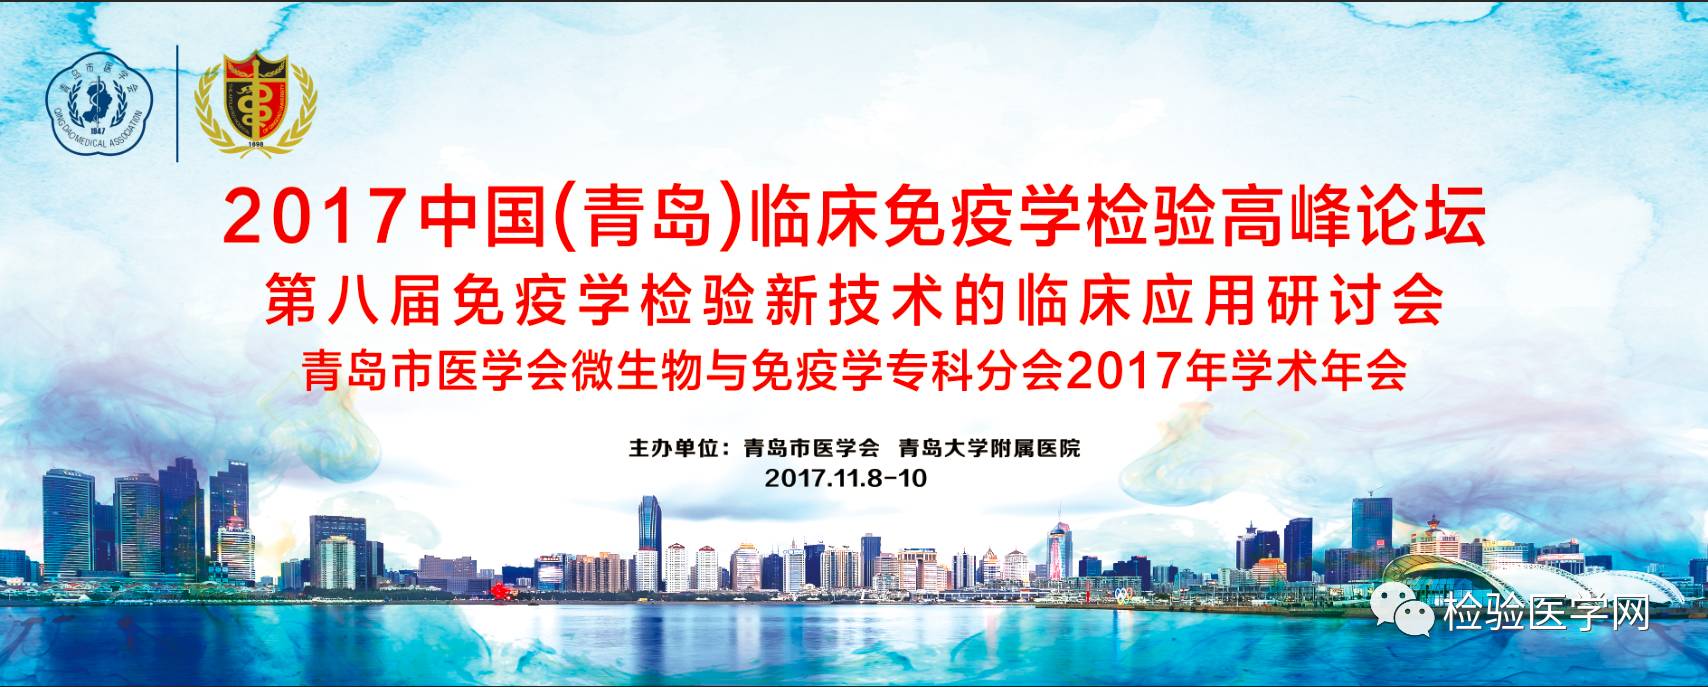 2017中国(青岛)临床免疫学检验高峰论坛圆满落